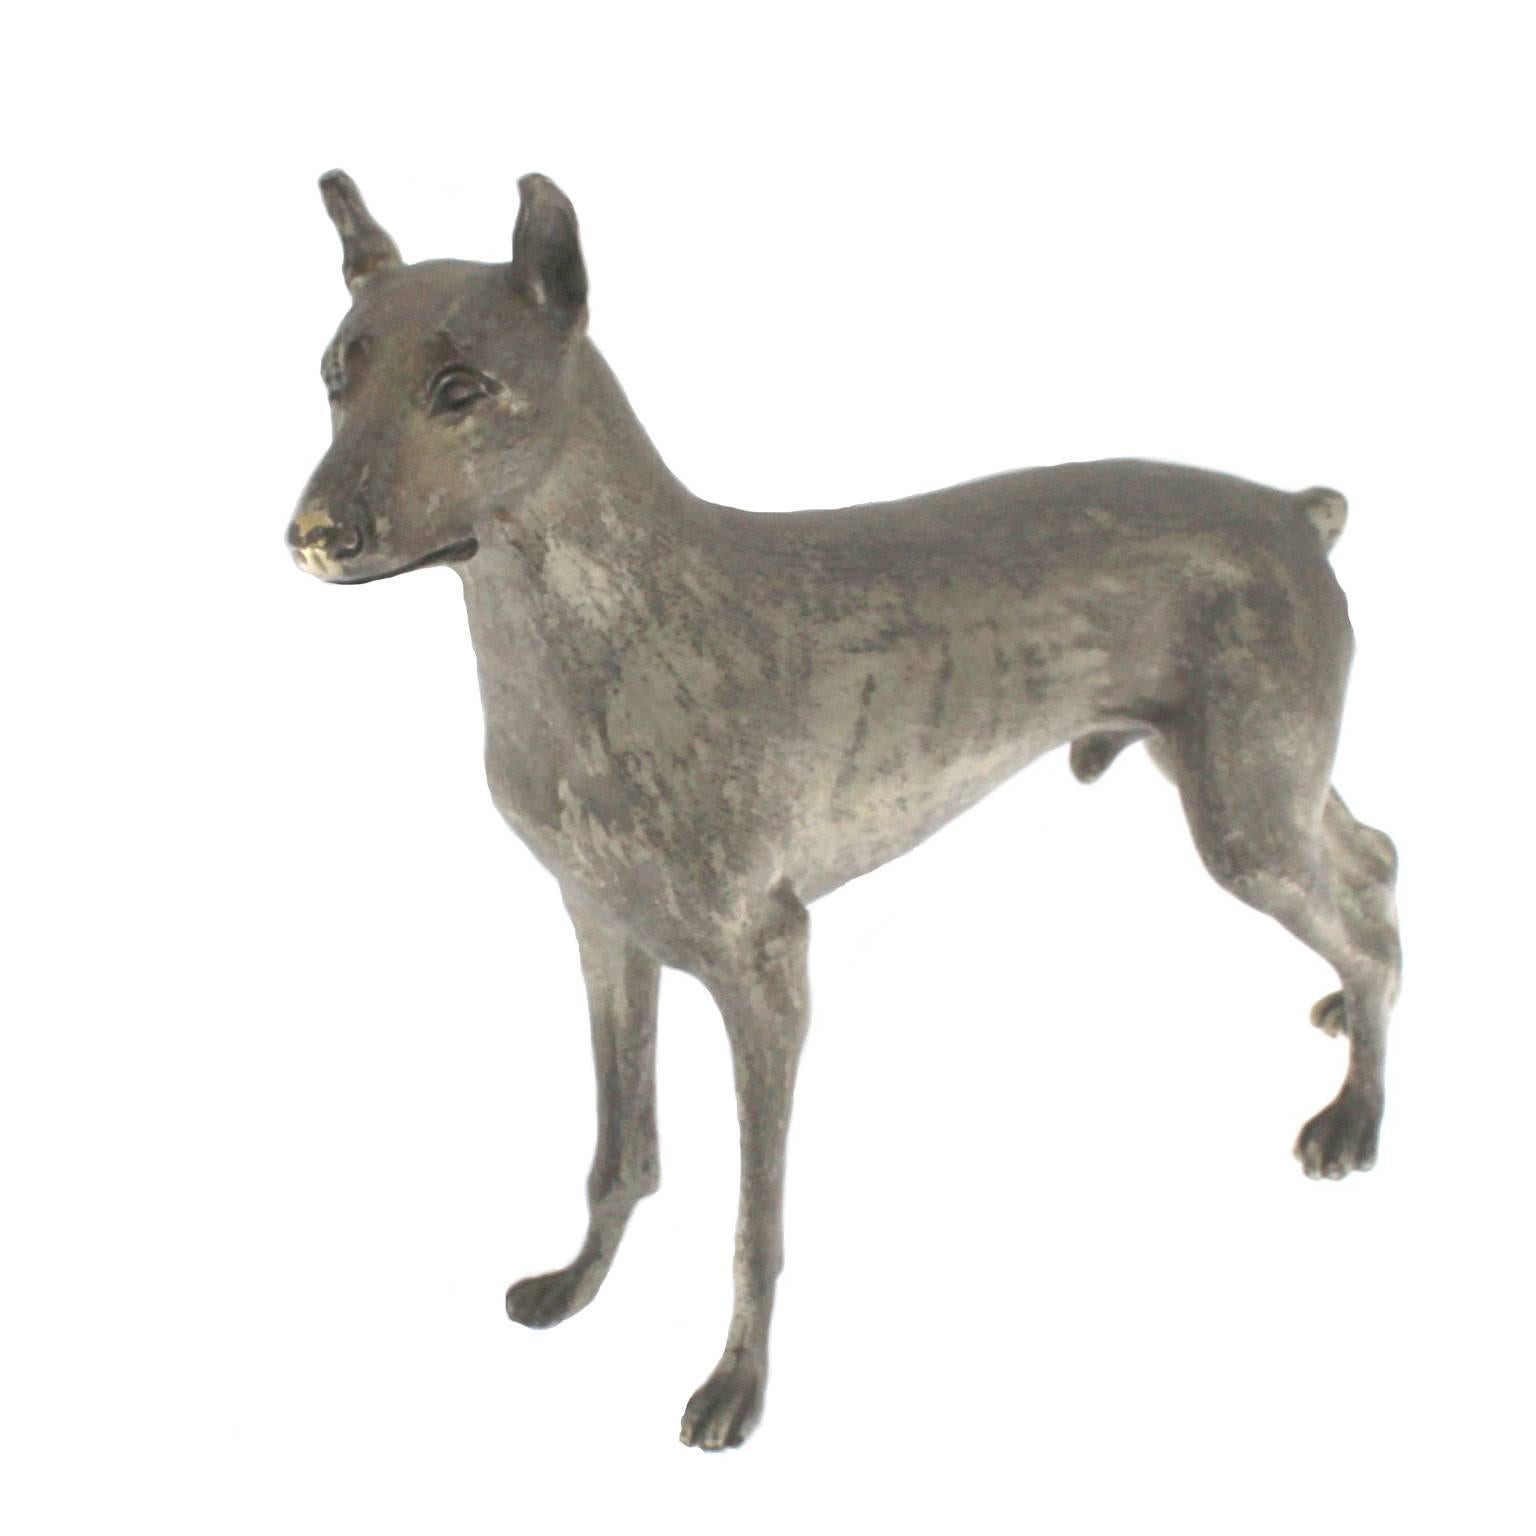 Male Doberman dog sculpture in Silver
